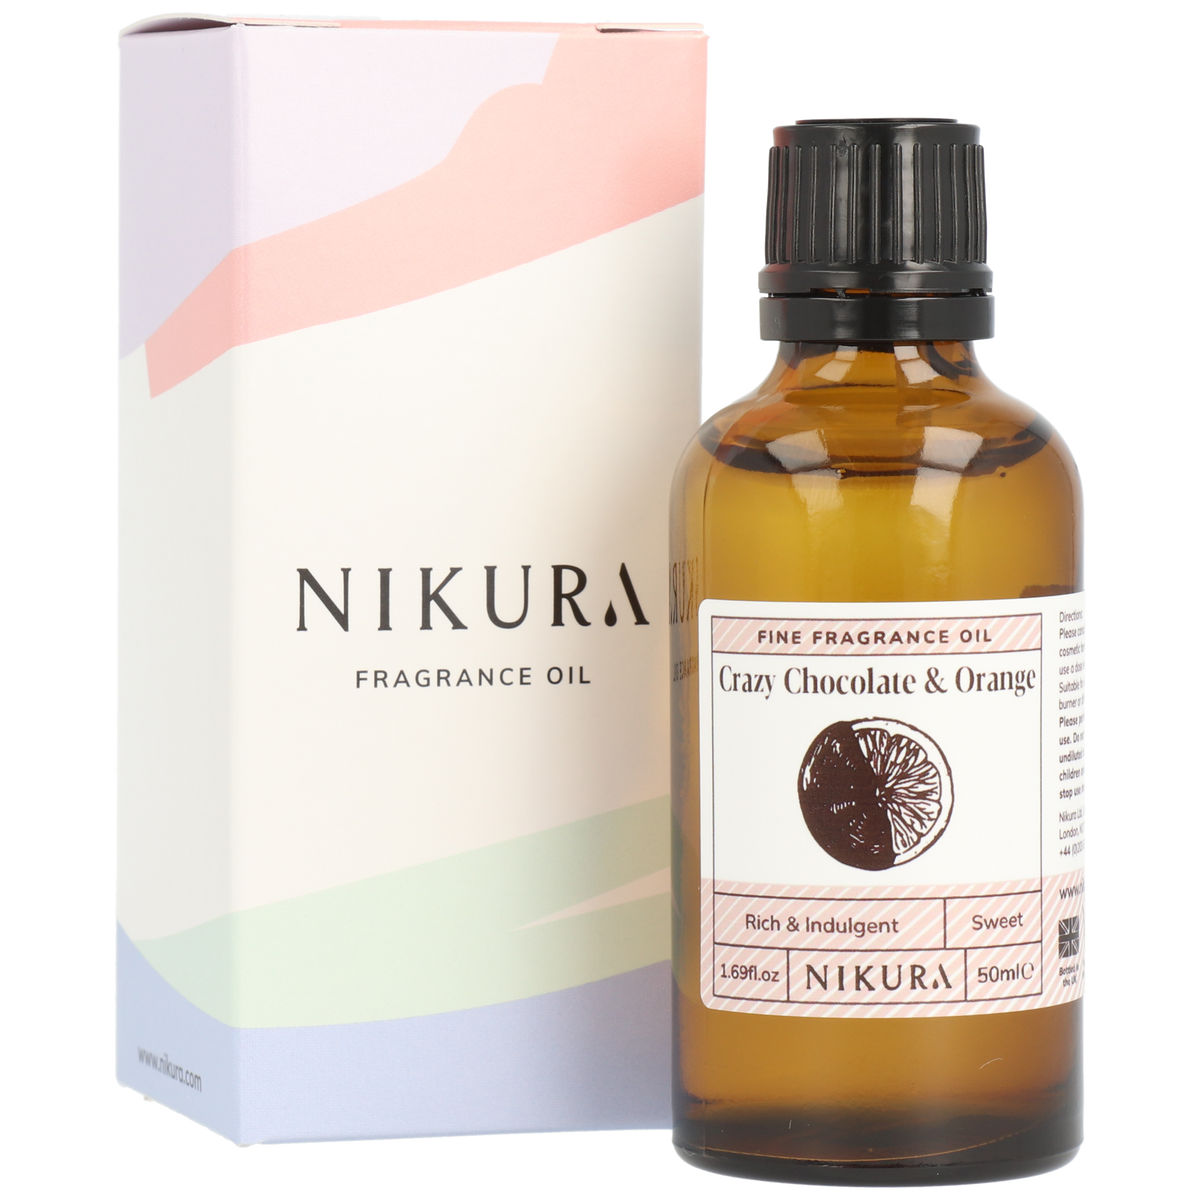 Crazy Chocolate & Orange Fragrance Oil | Nikura